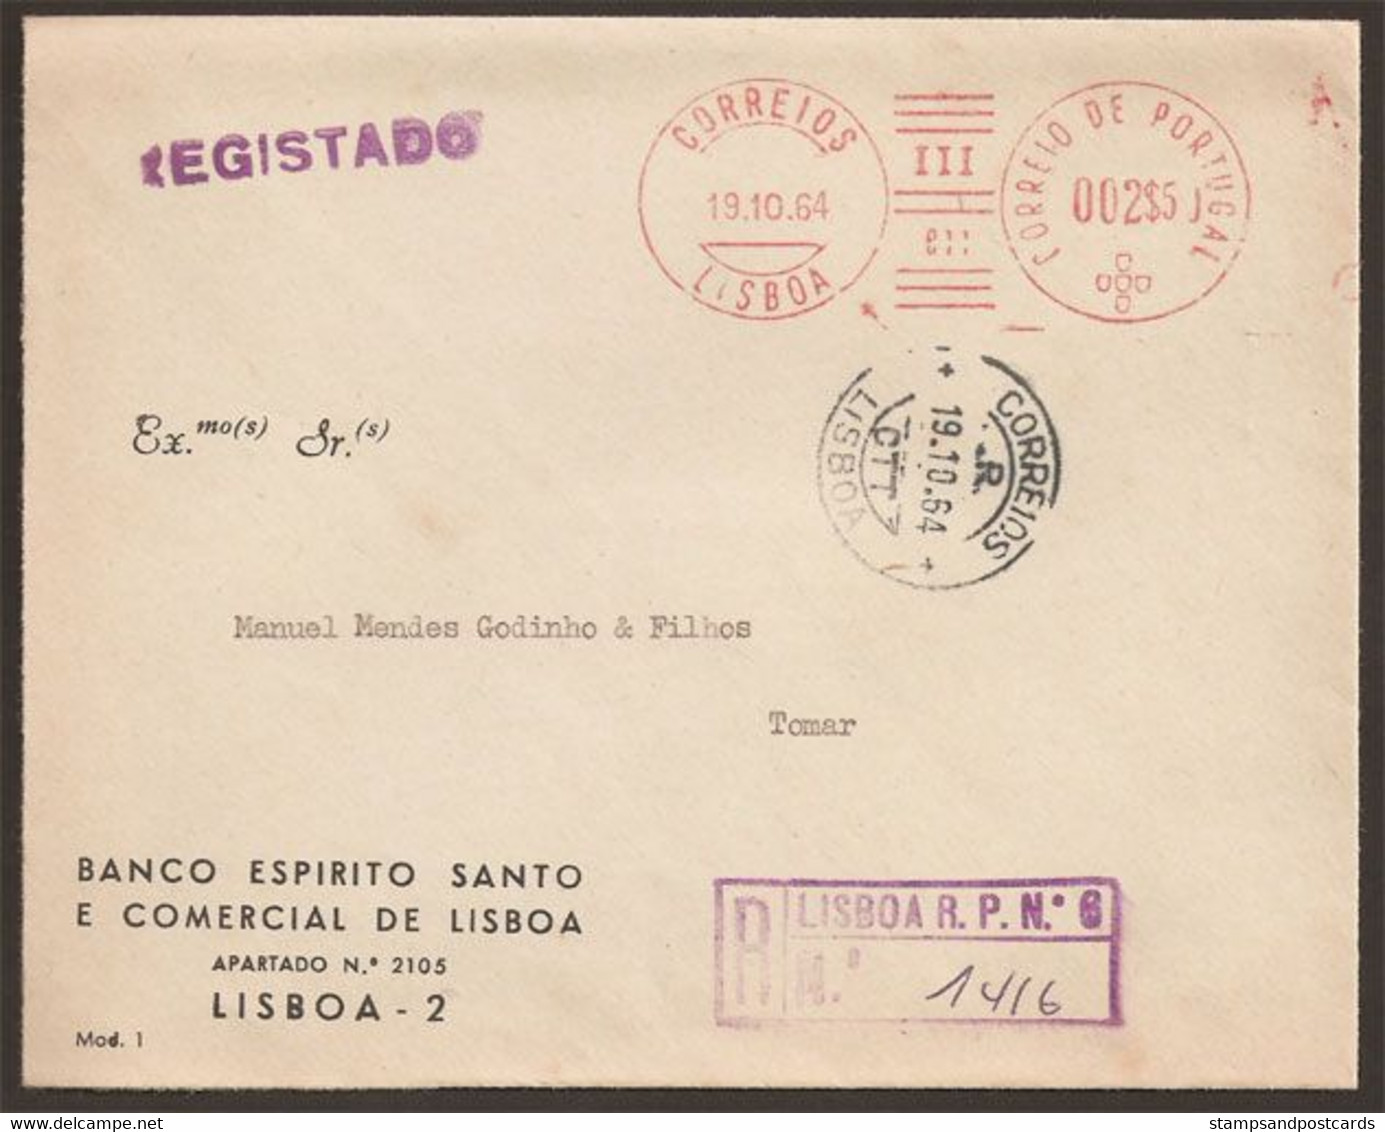 Portugal EMA Cachet Rouge Banque BESCL 1964 Recommandée Privé Nº 6 Meter Stamp BESCL Bank Private Registration Nº 6 - Macchine Per Obliterare (EMA)